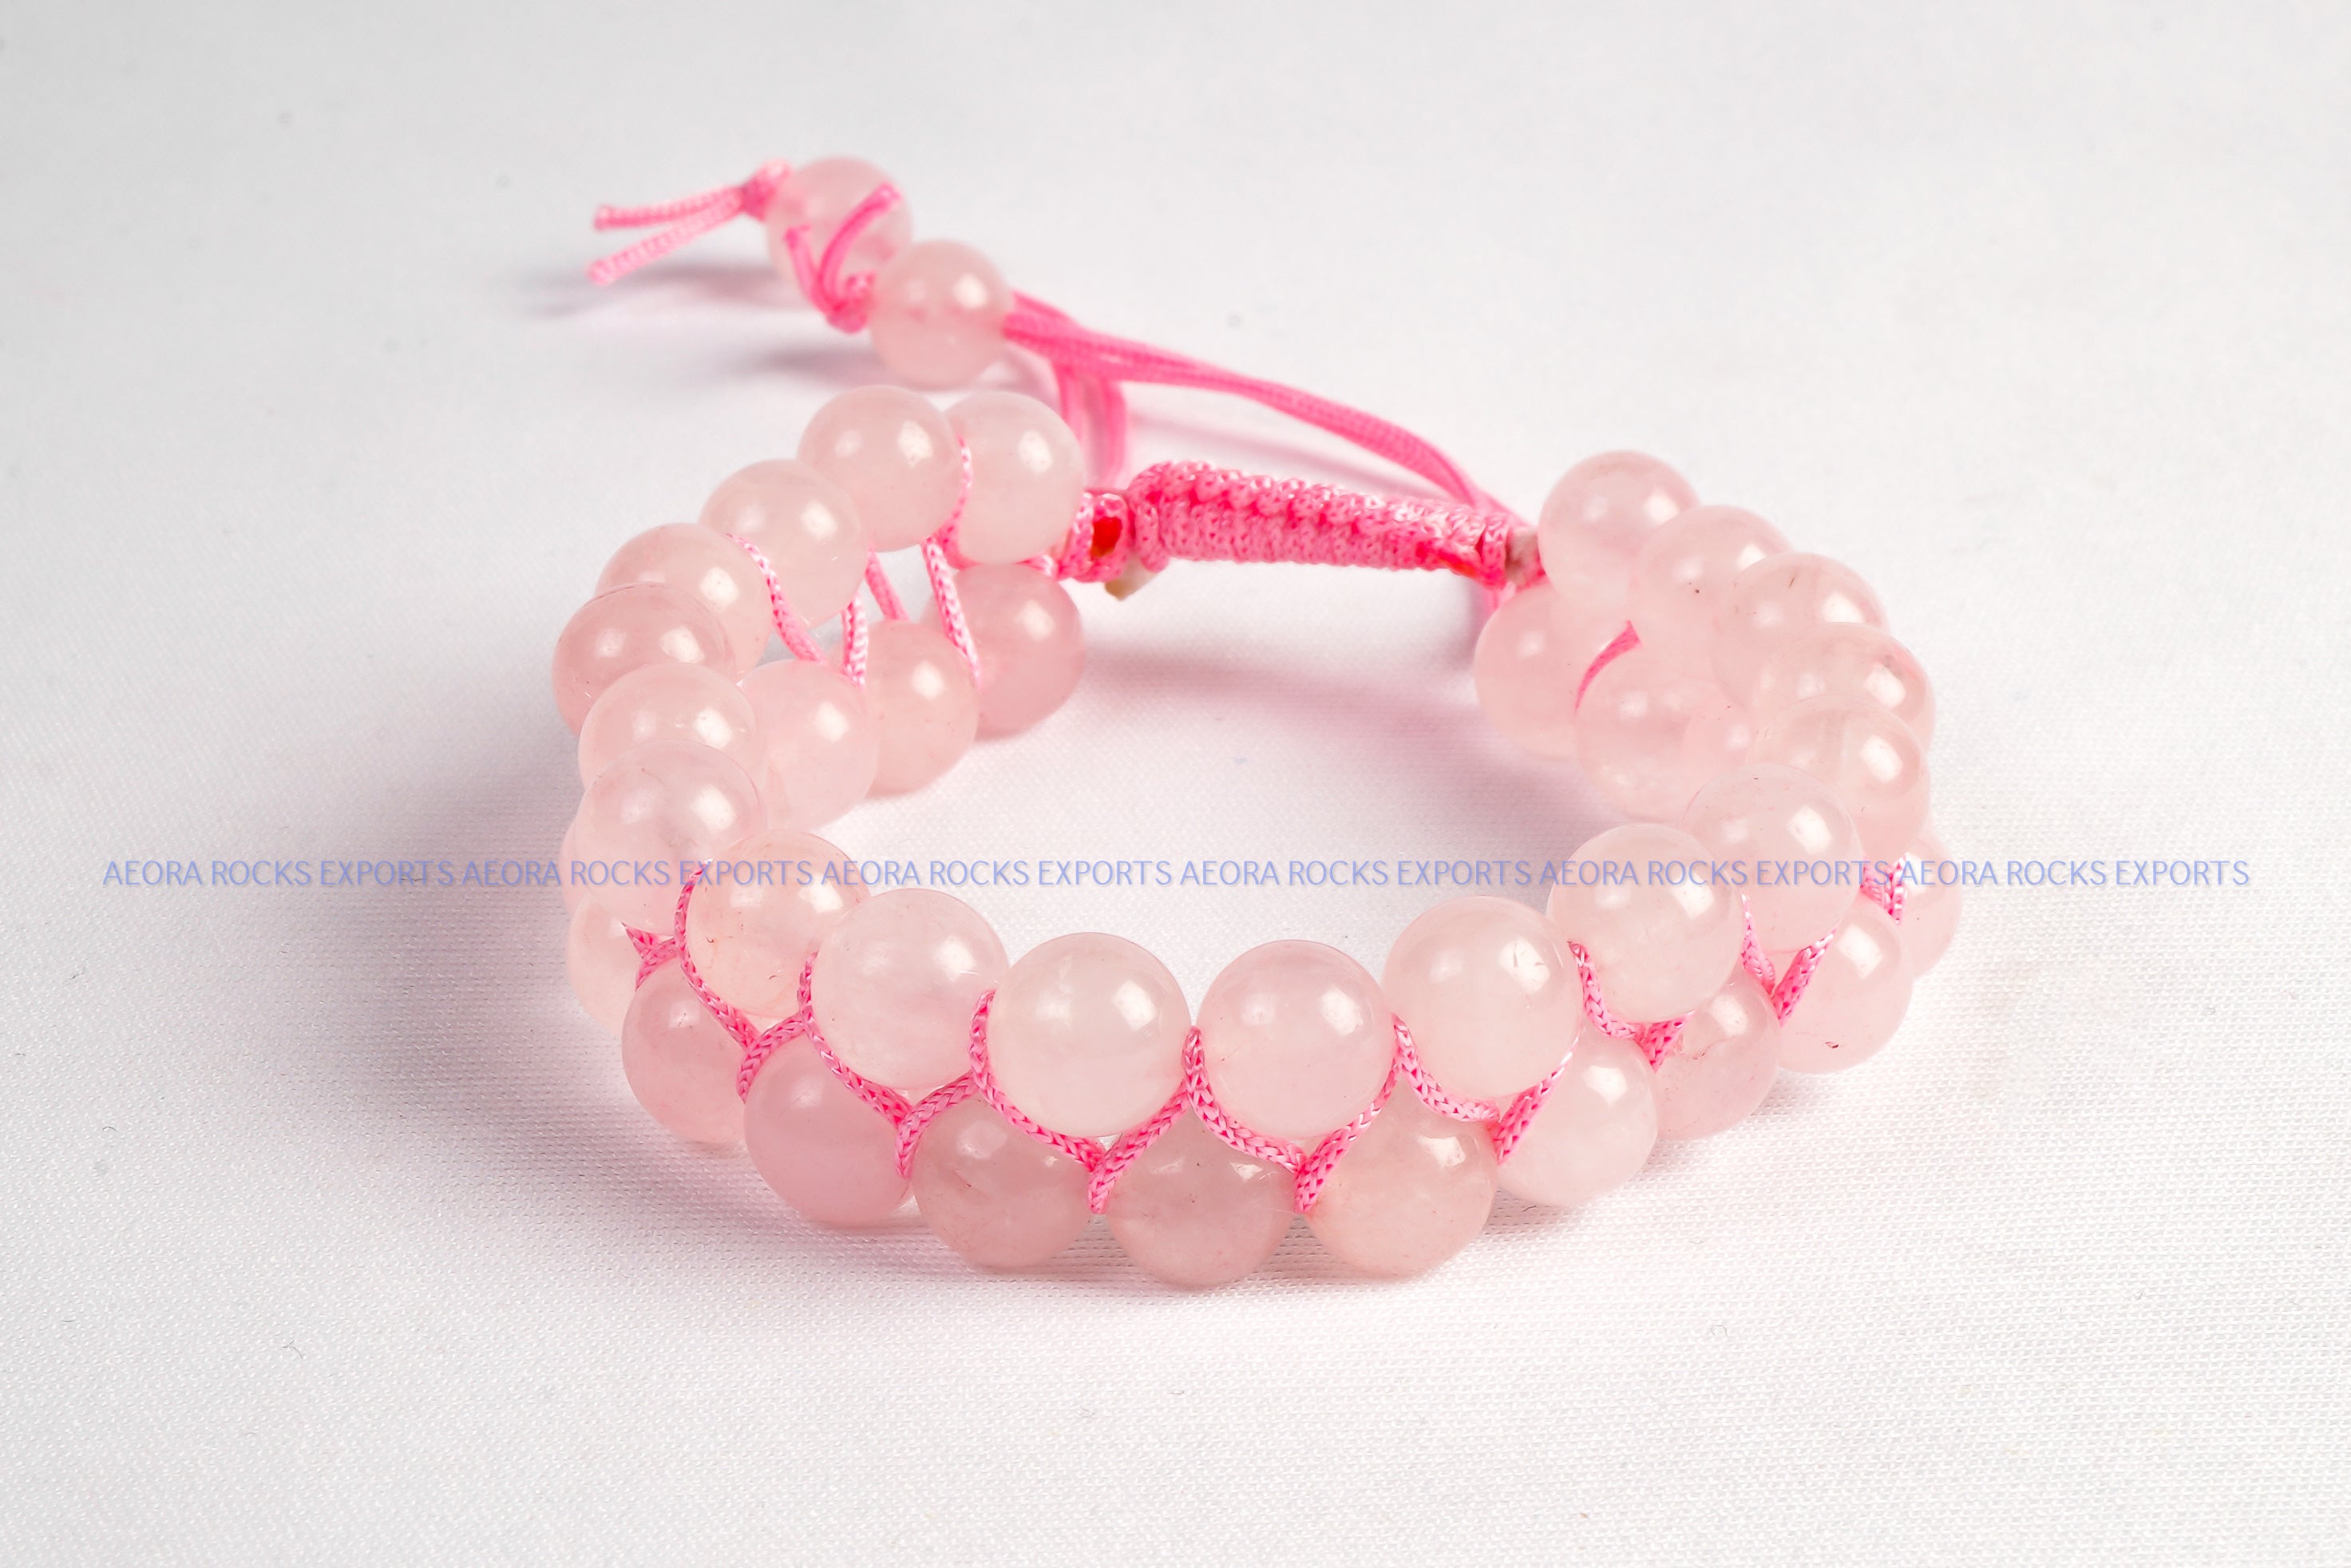 Rose Quartz and Sterling Silver Link Bracelet from India - Pink Allure |  NOVICA